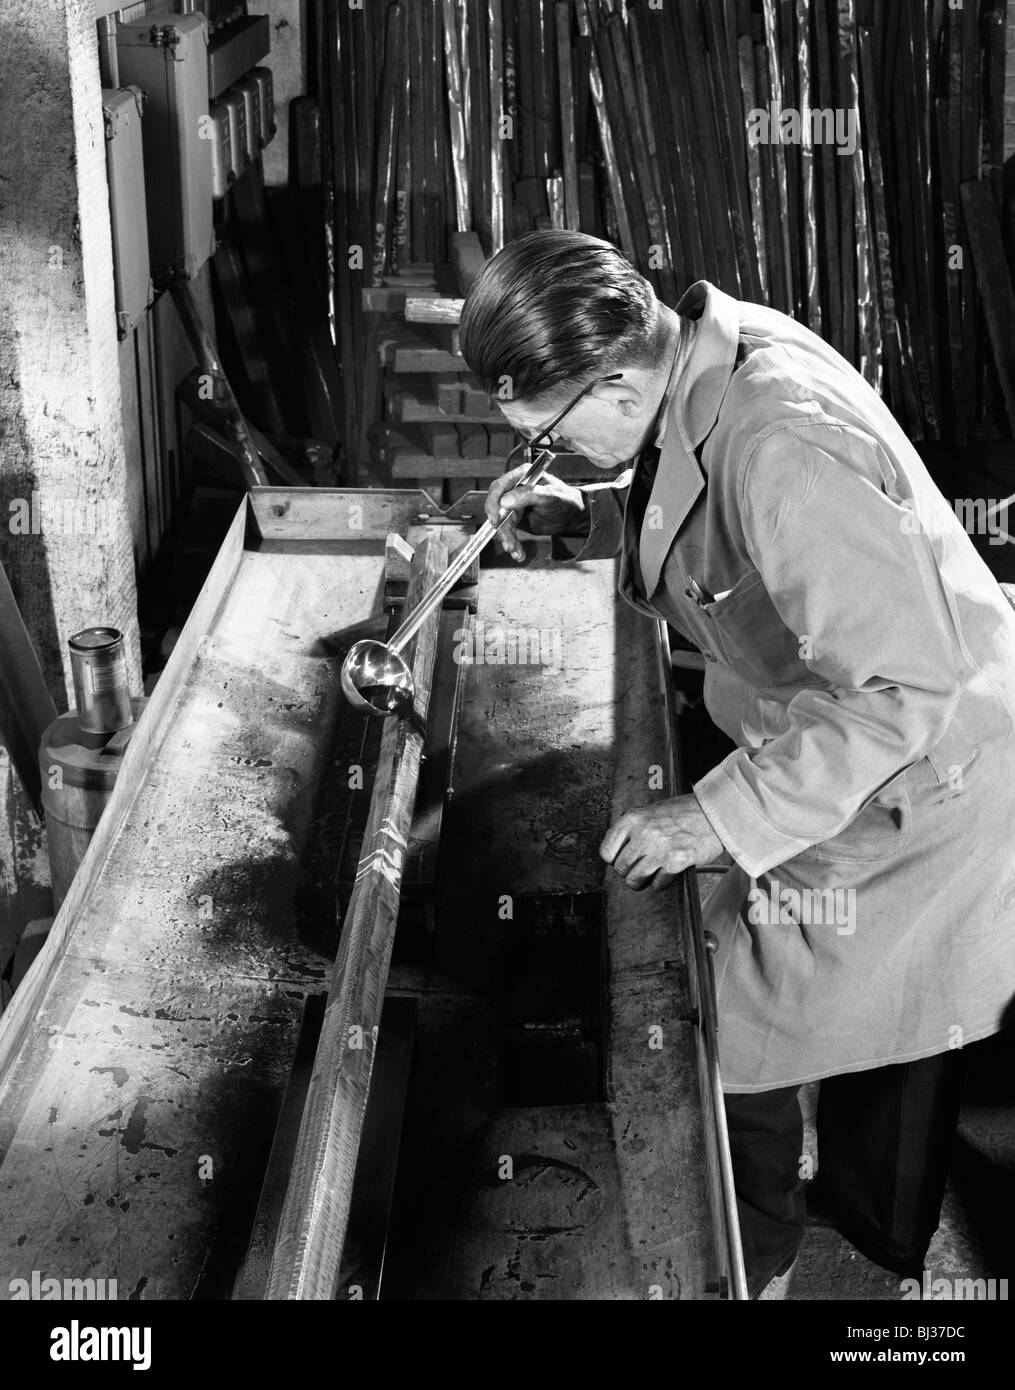 Détection de fissures sur les barres d'acier à J Eugène Riedweg & Sons, Sheffield, South Yorkshire, 1963. Artiste : Michael Walters Banque D'Images